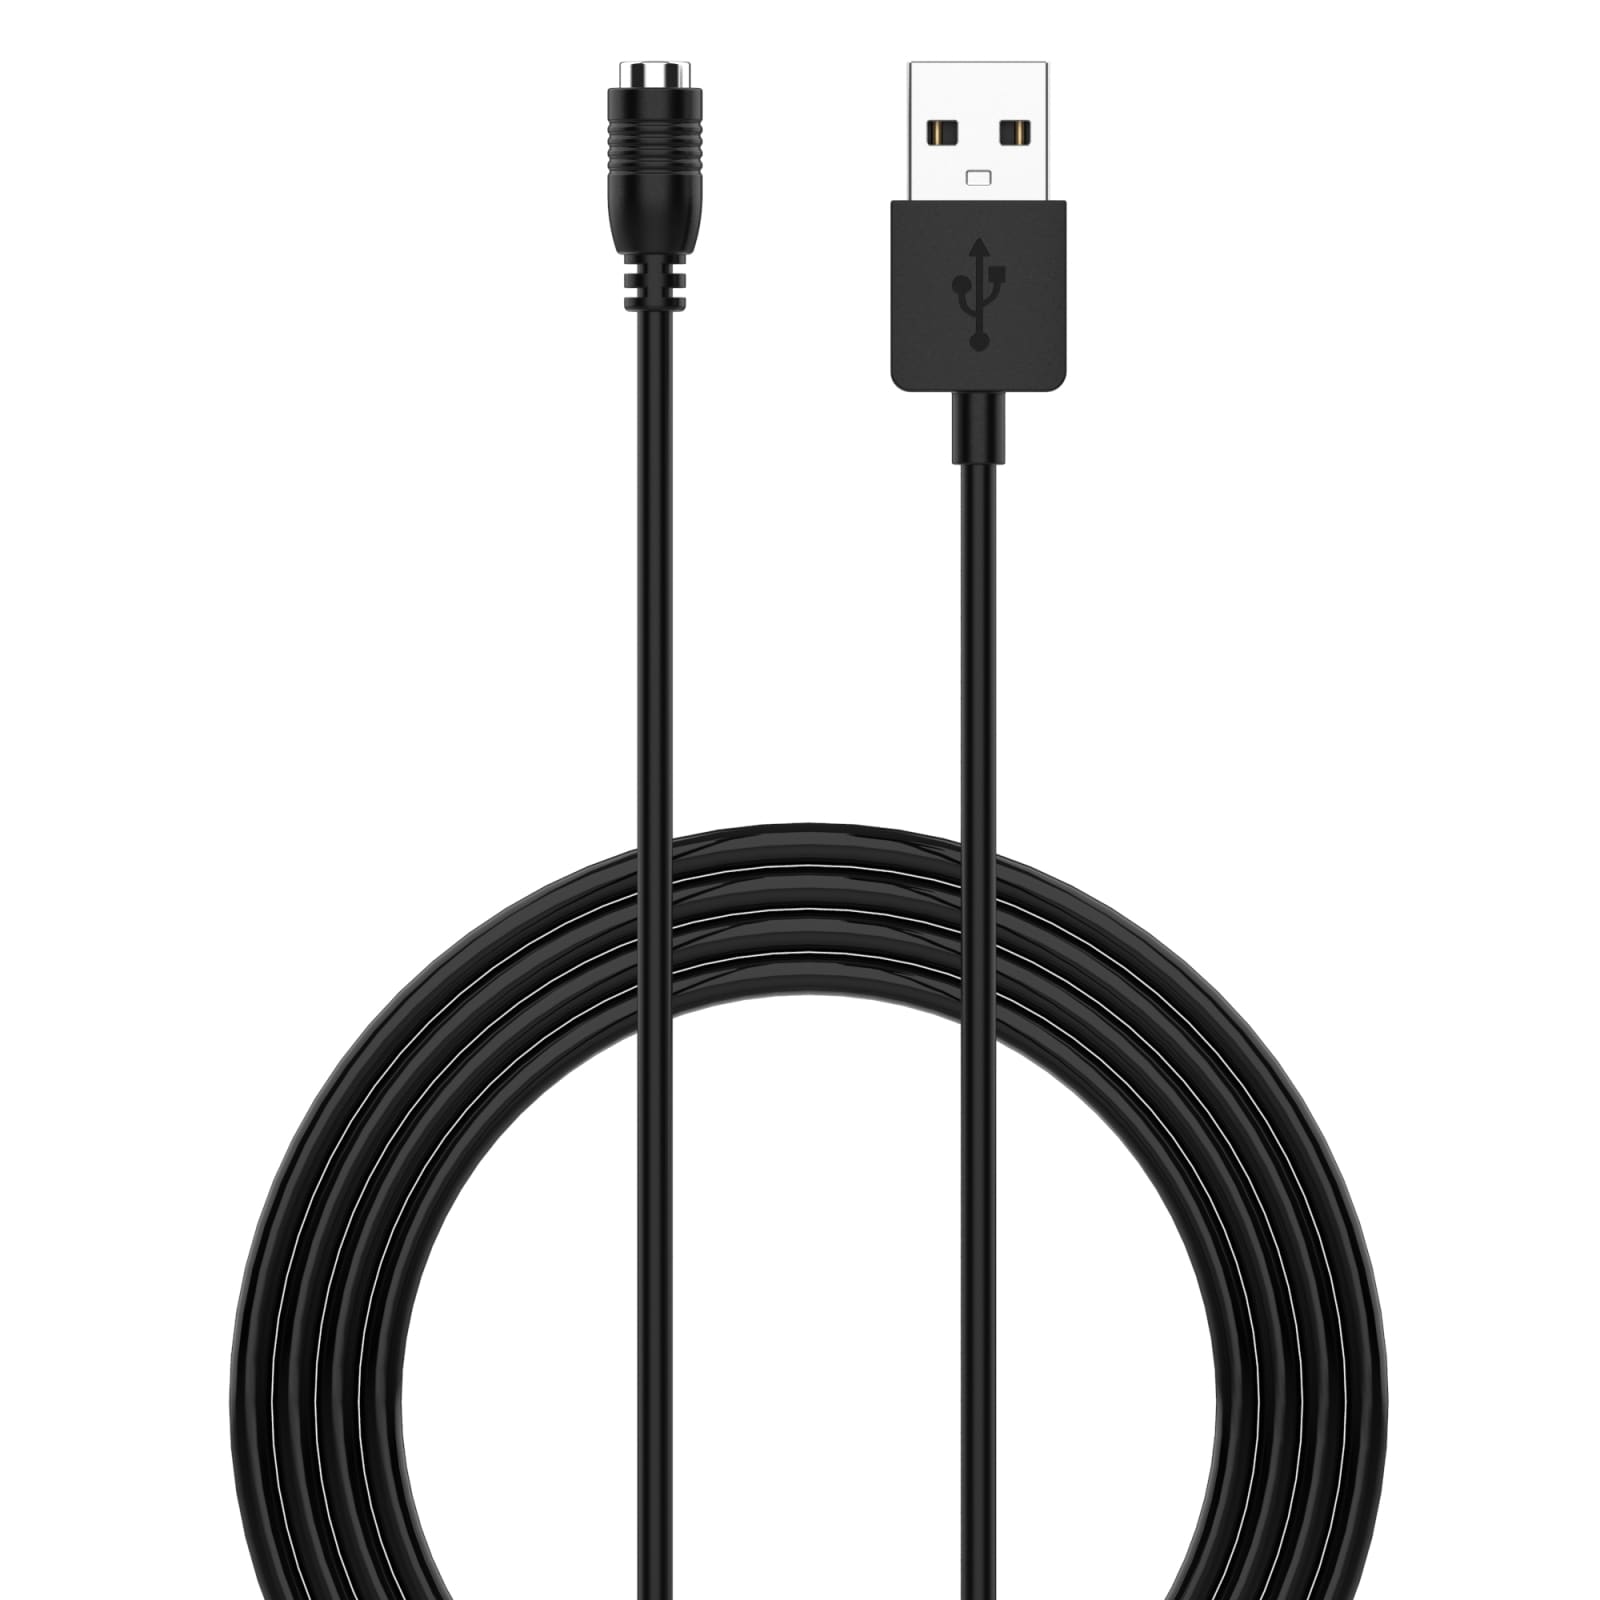 Latauskaapeli Casio WSD-F20 - USB 1m - Musta